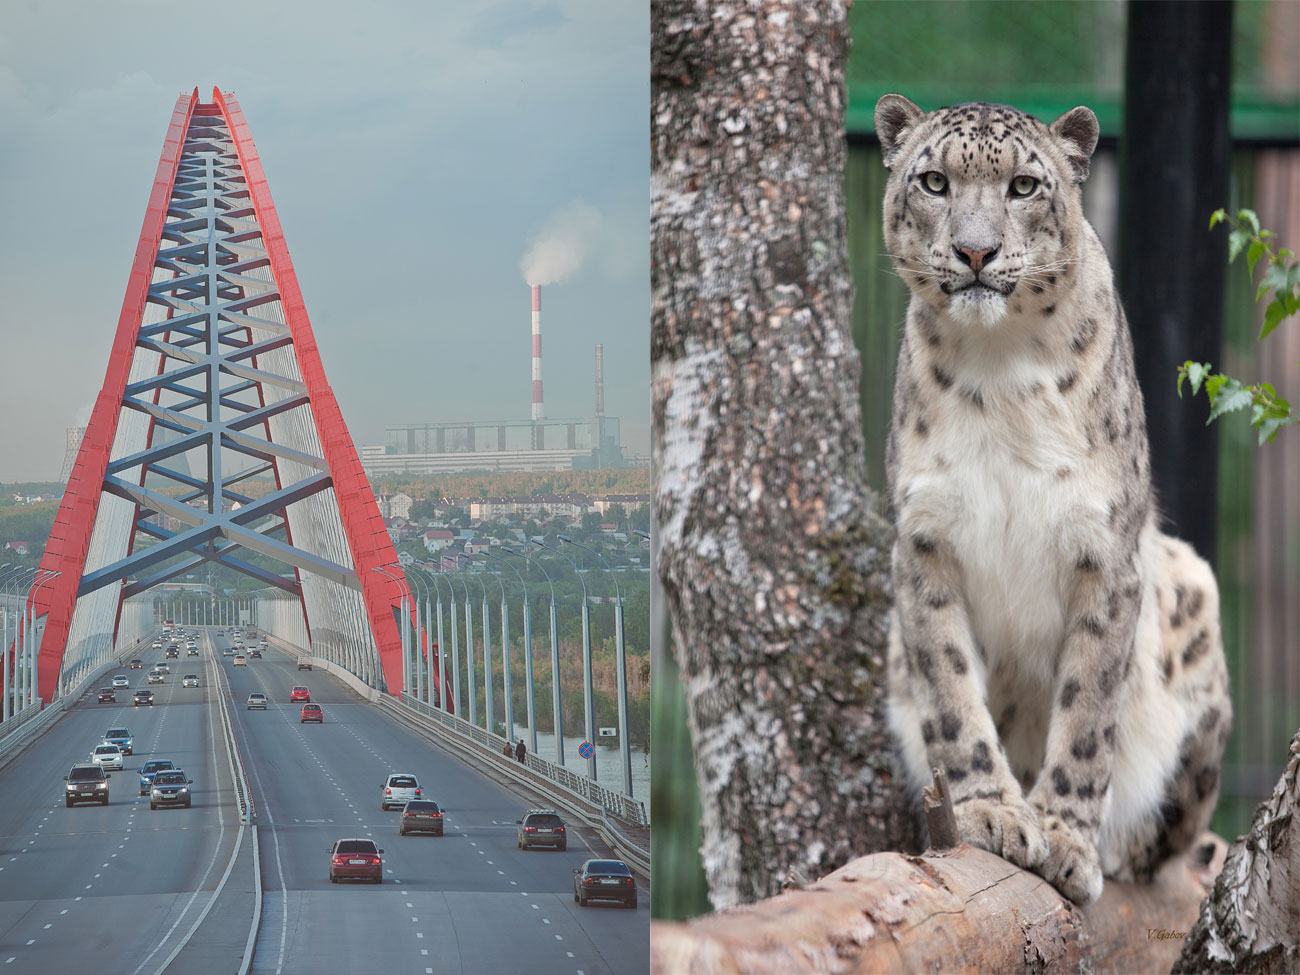 През август Централната банка планира да проведе гласуване, за да избере едно от 10-те най-номинирани предложения. / Новосибирск, най-големият град в Сибир, е известен с живописния си Бугрински мост и прочутата си зоологическа градина, където живее редкият снежен леопард.